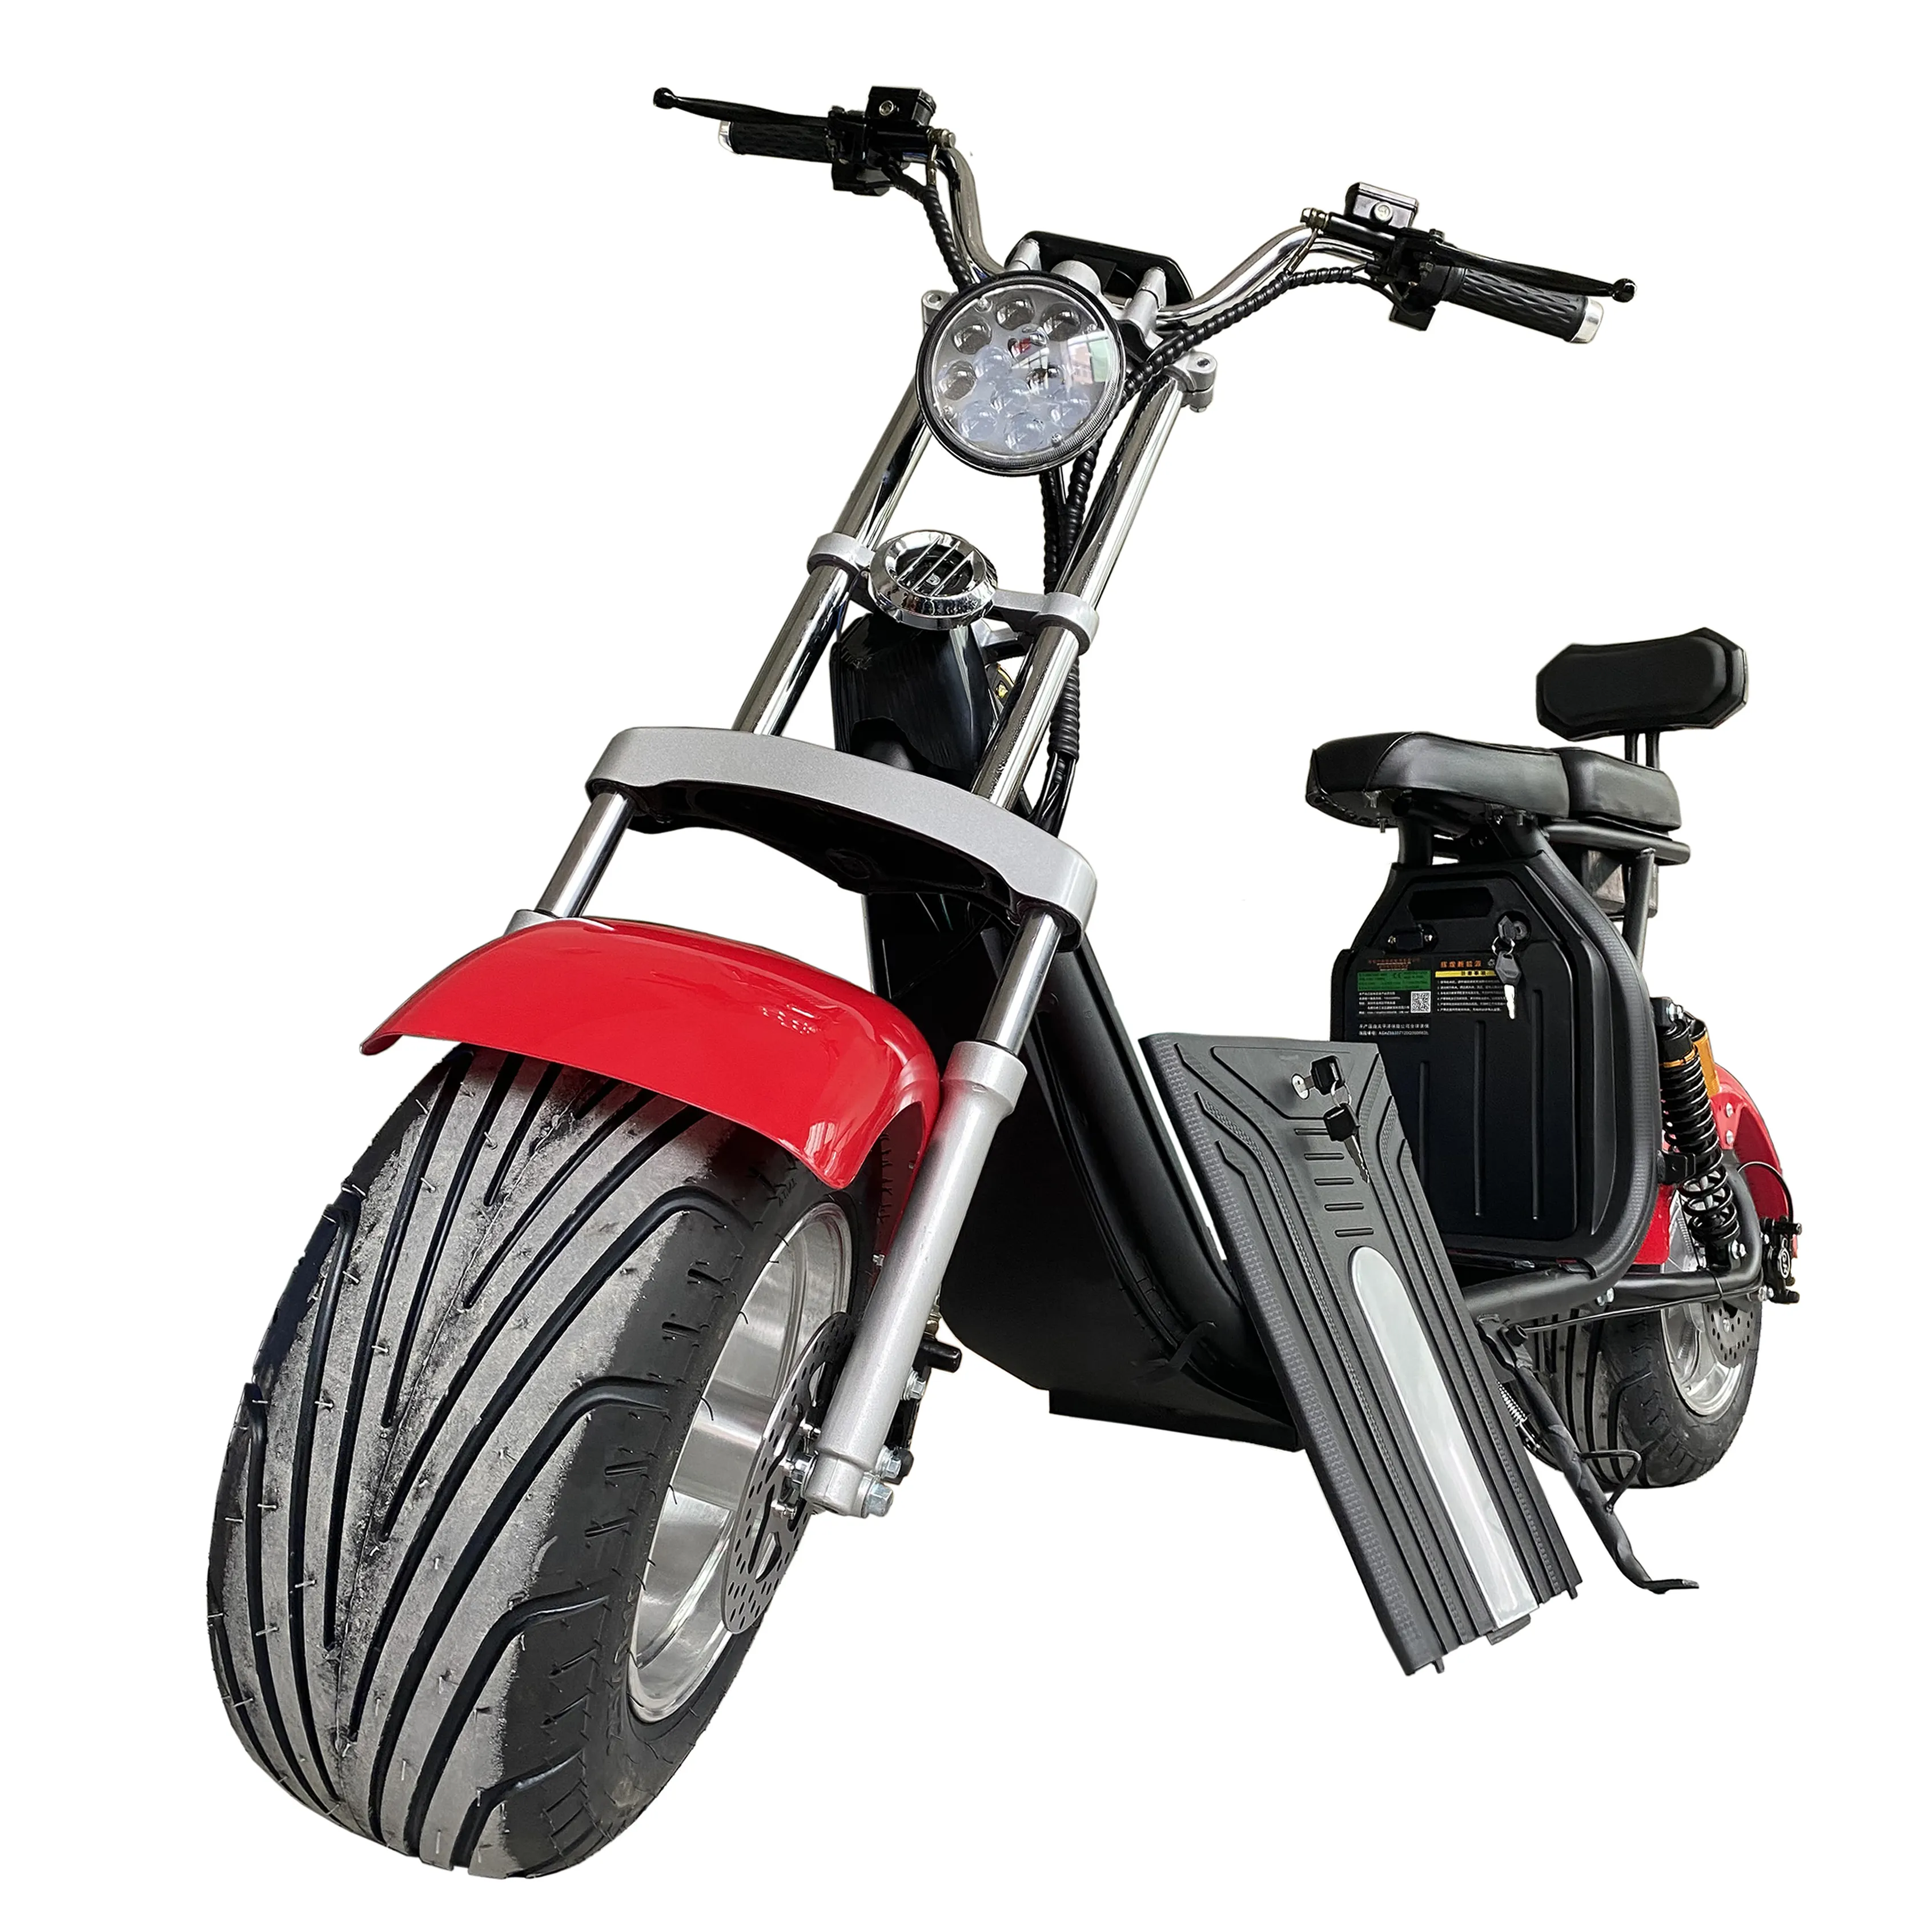 Super bon marché citycoco 60v électrique italien scooter en bois pont scooter électrique 2000w rrear roue